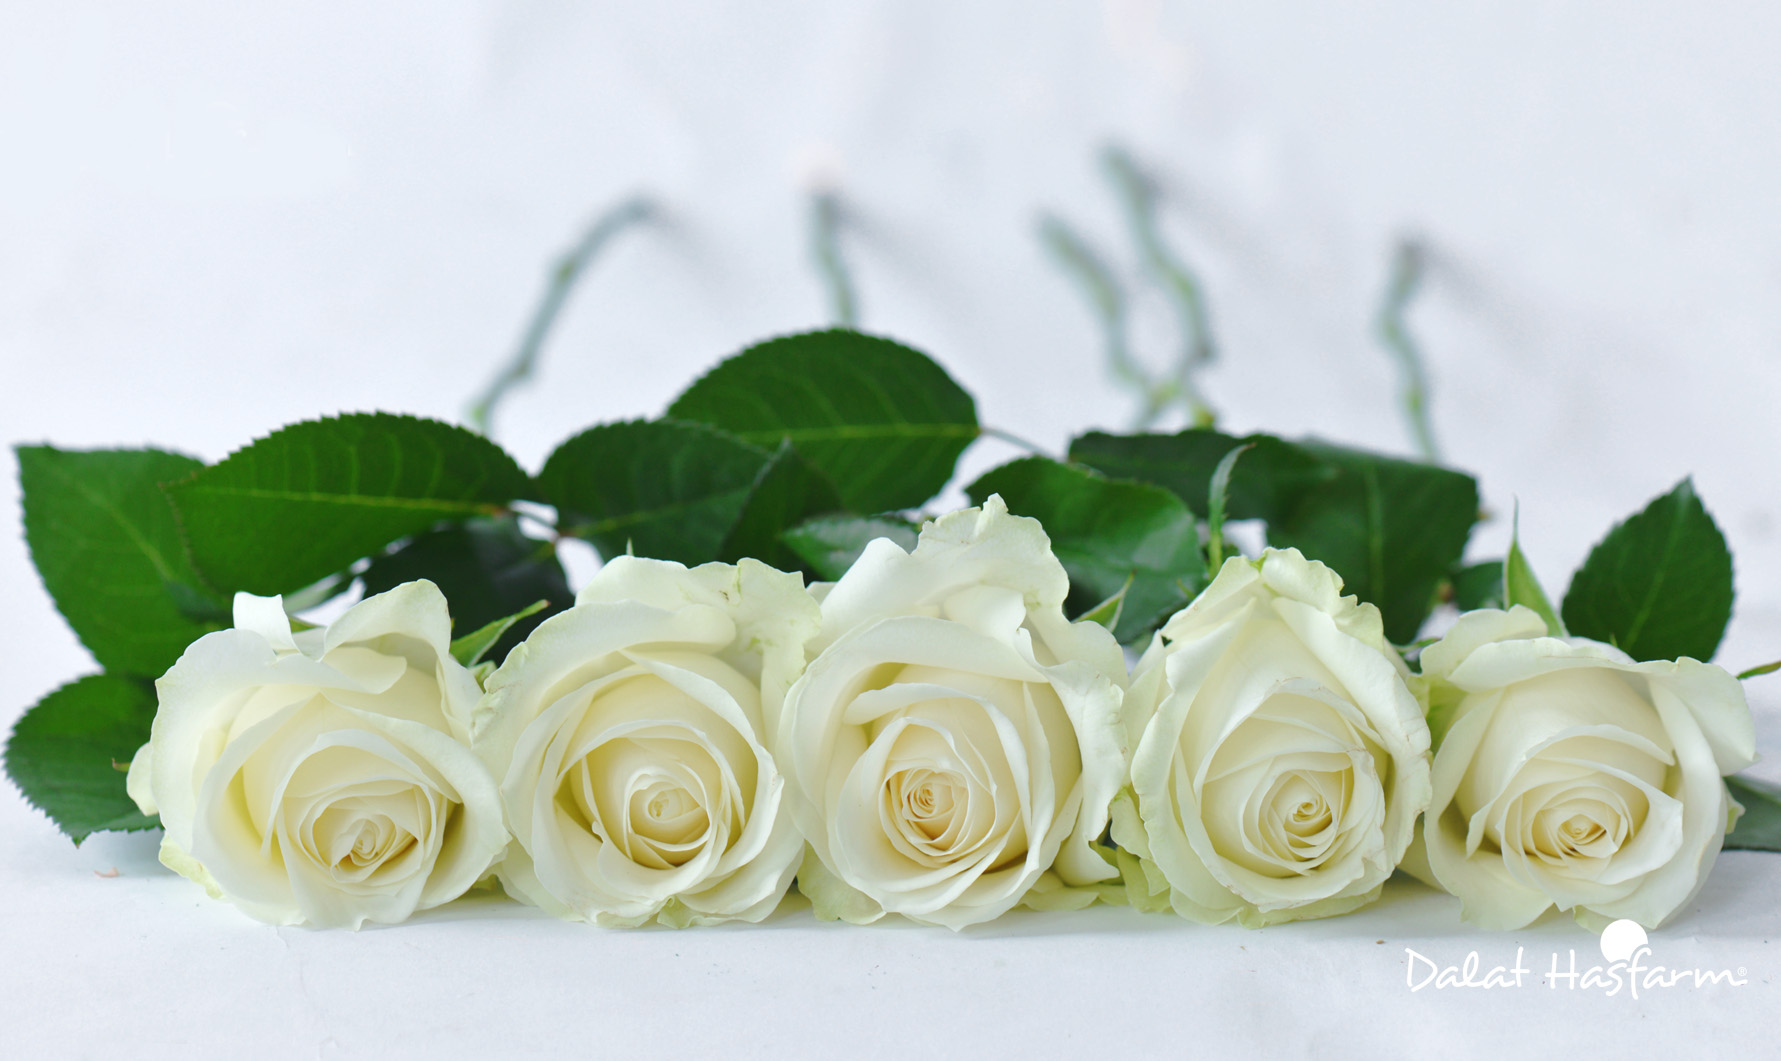 Năm bông hồng trắng xếp gần nhau